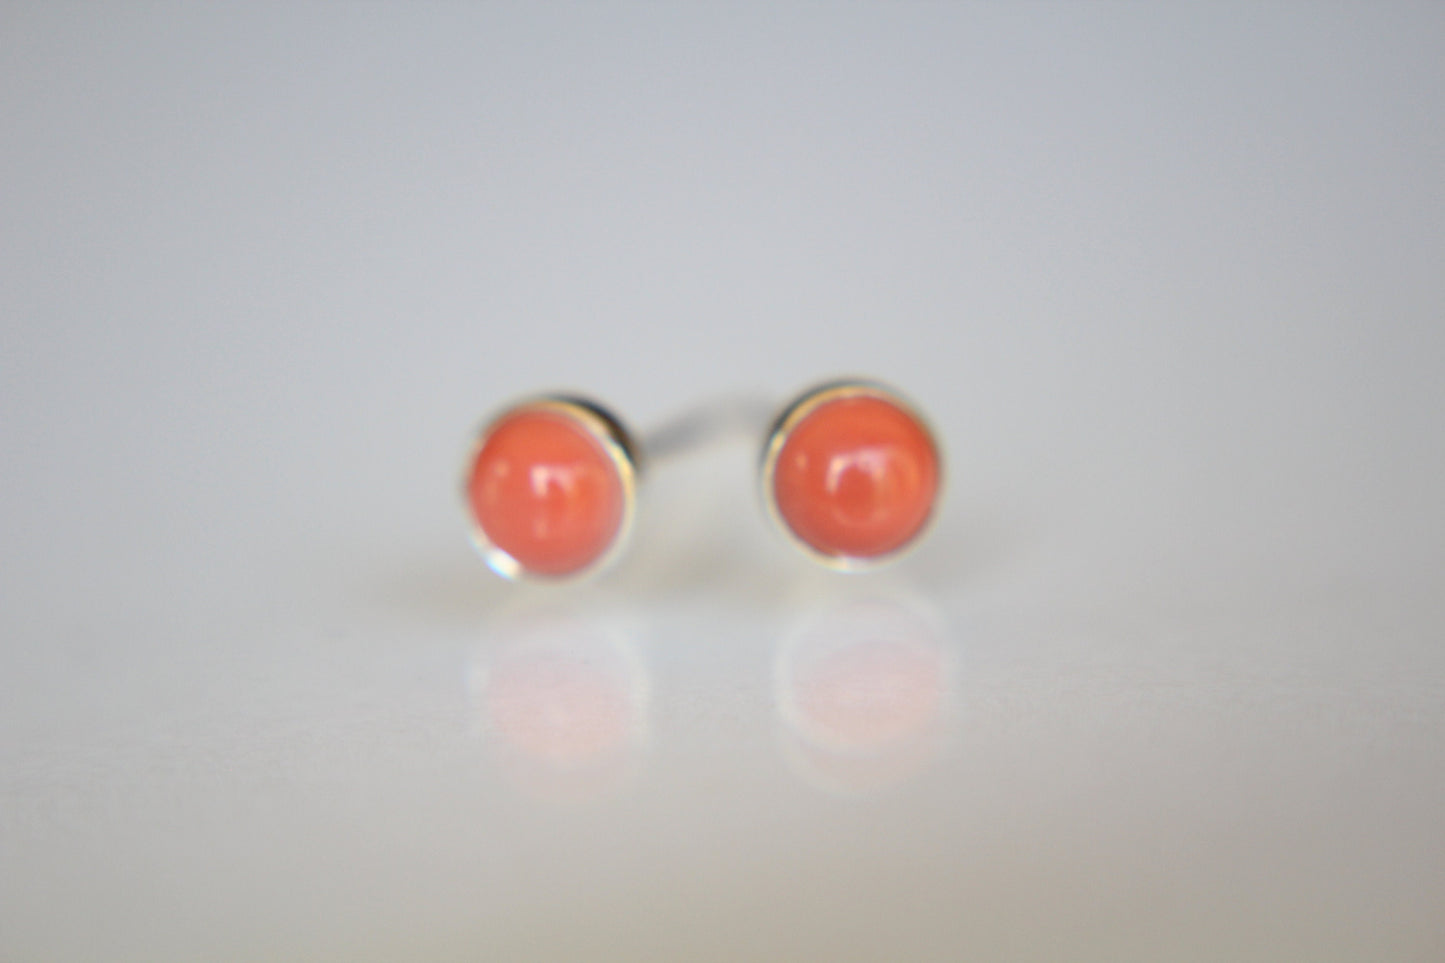 Coral Earrings, Coral Gemstone Earrings, Sterling Earrings, Post Earrings, Coral Post Earrings, Small Earrings, Minimalist Earrings, Gift